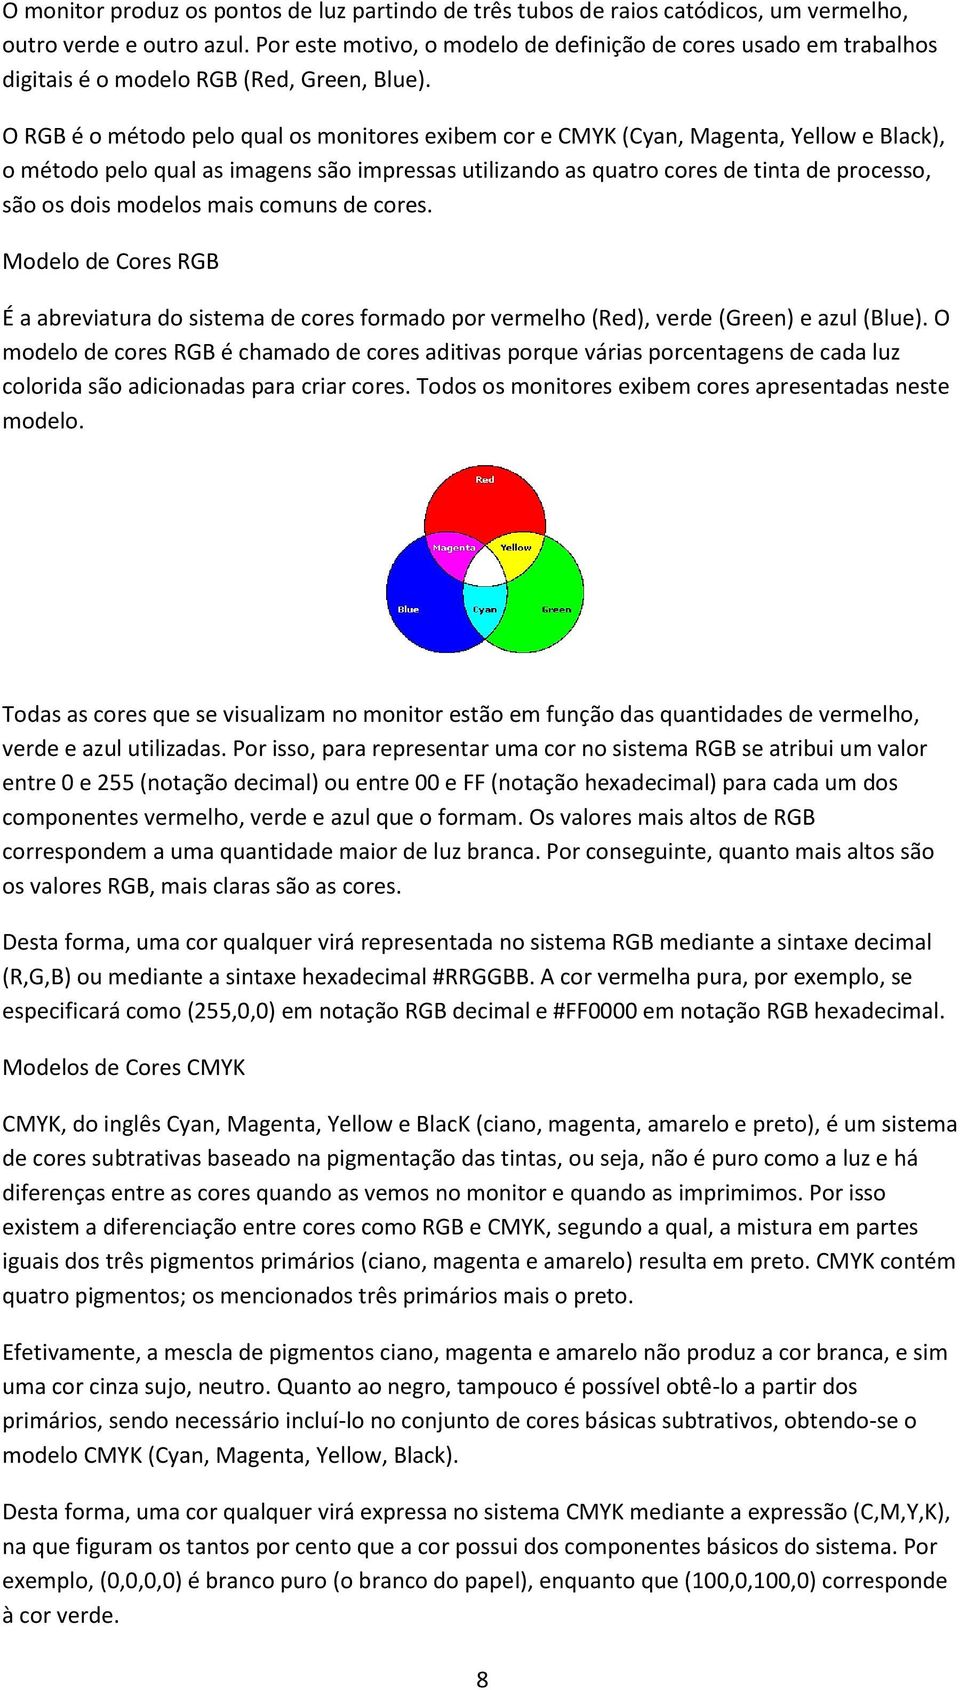 O RGB é o método pelo qual os monitores exibem cor e CMYK (Cyan, Magenta, Yellow e Black), o método pelo qual as imagens são impressas utilizando as quatro cores de tinta de processo, são os dois